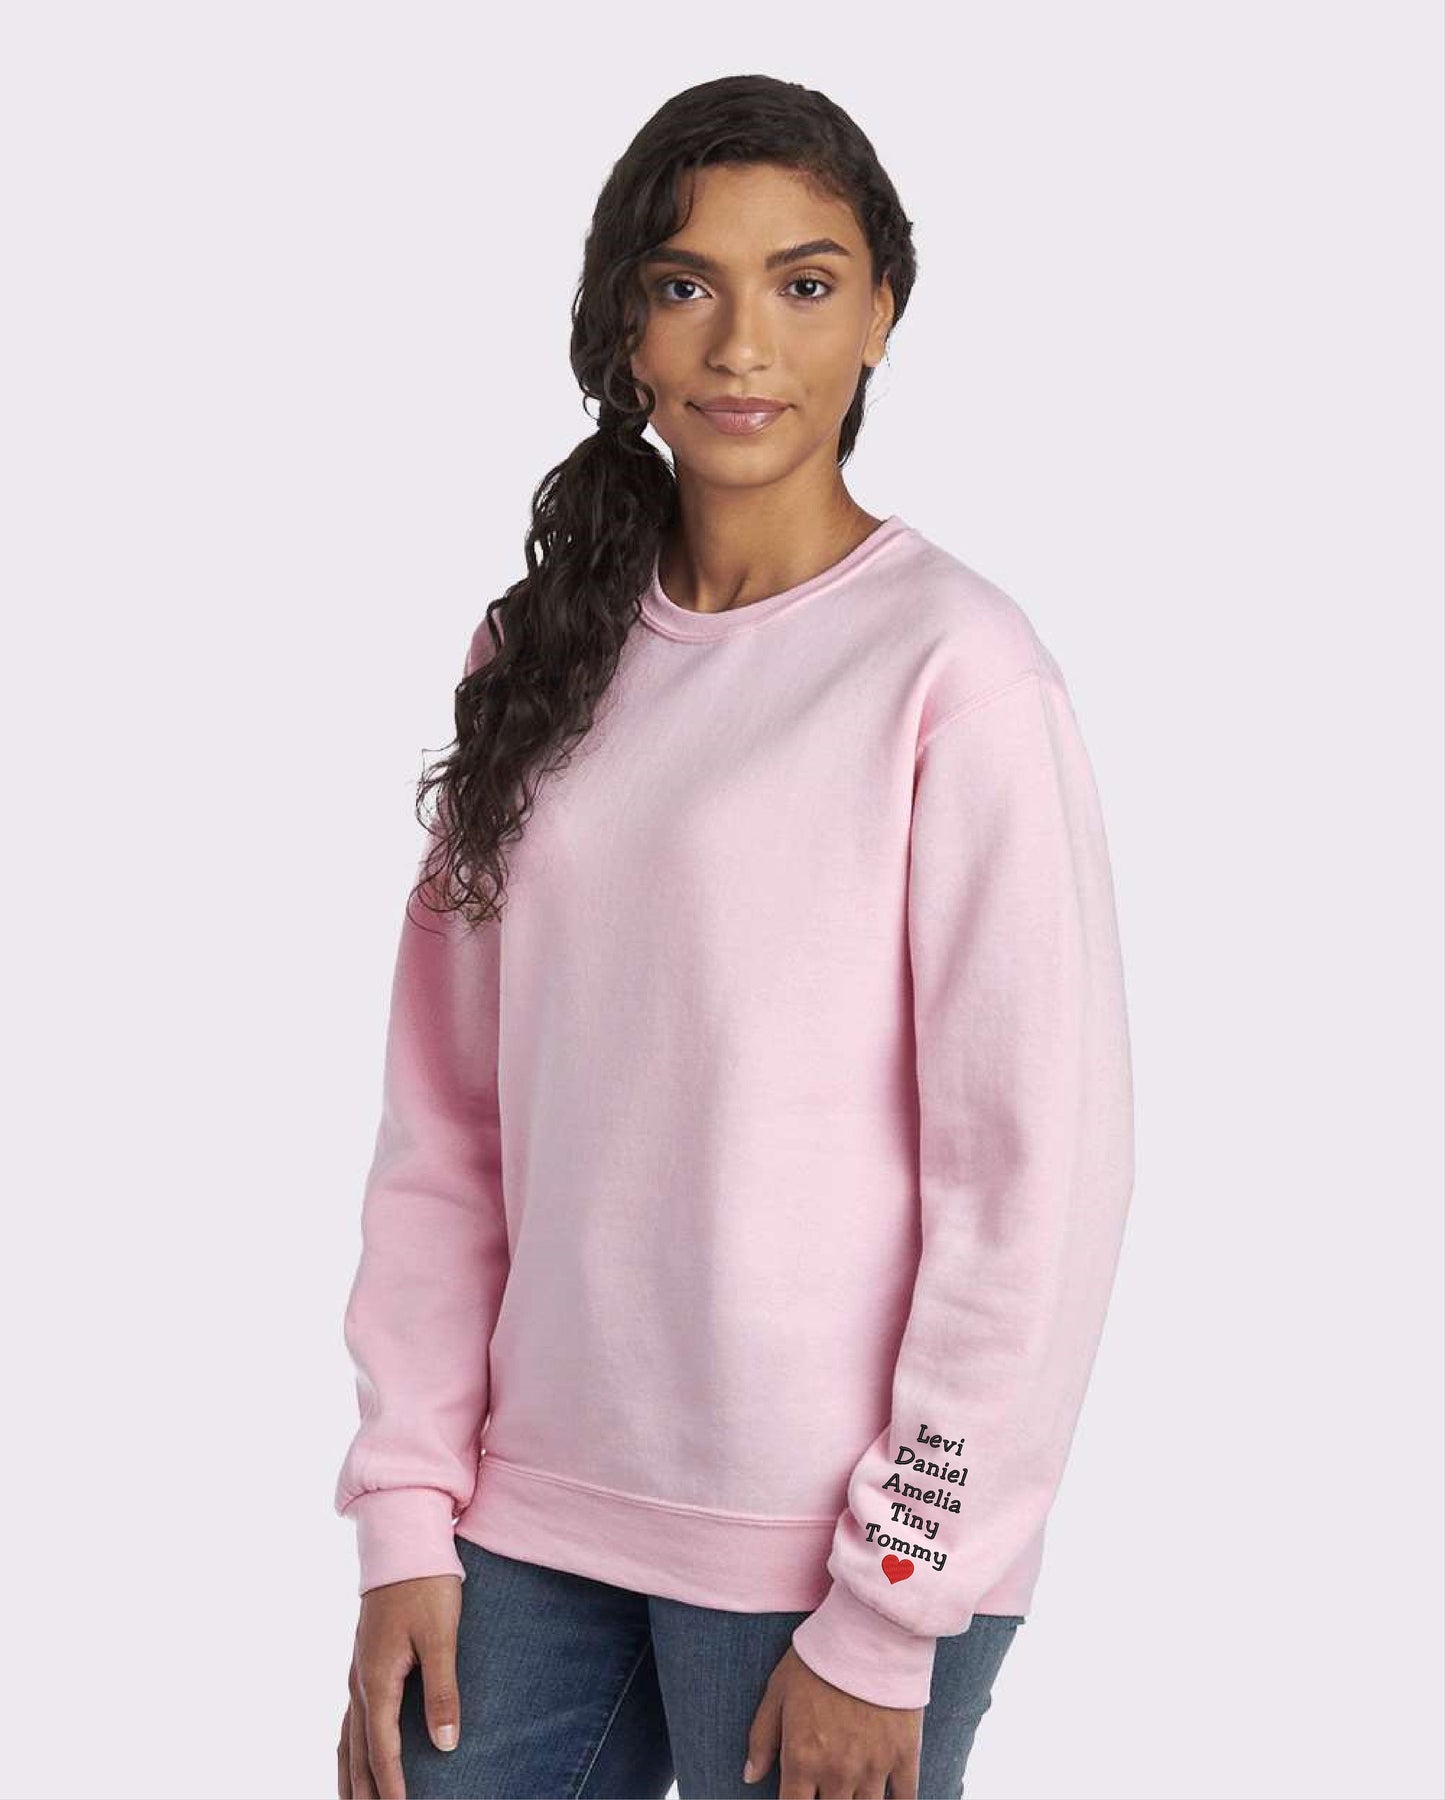 Embroidered Multiline Arm Cuff Sweatshirt